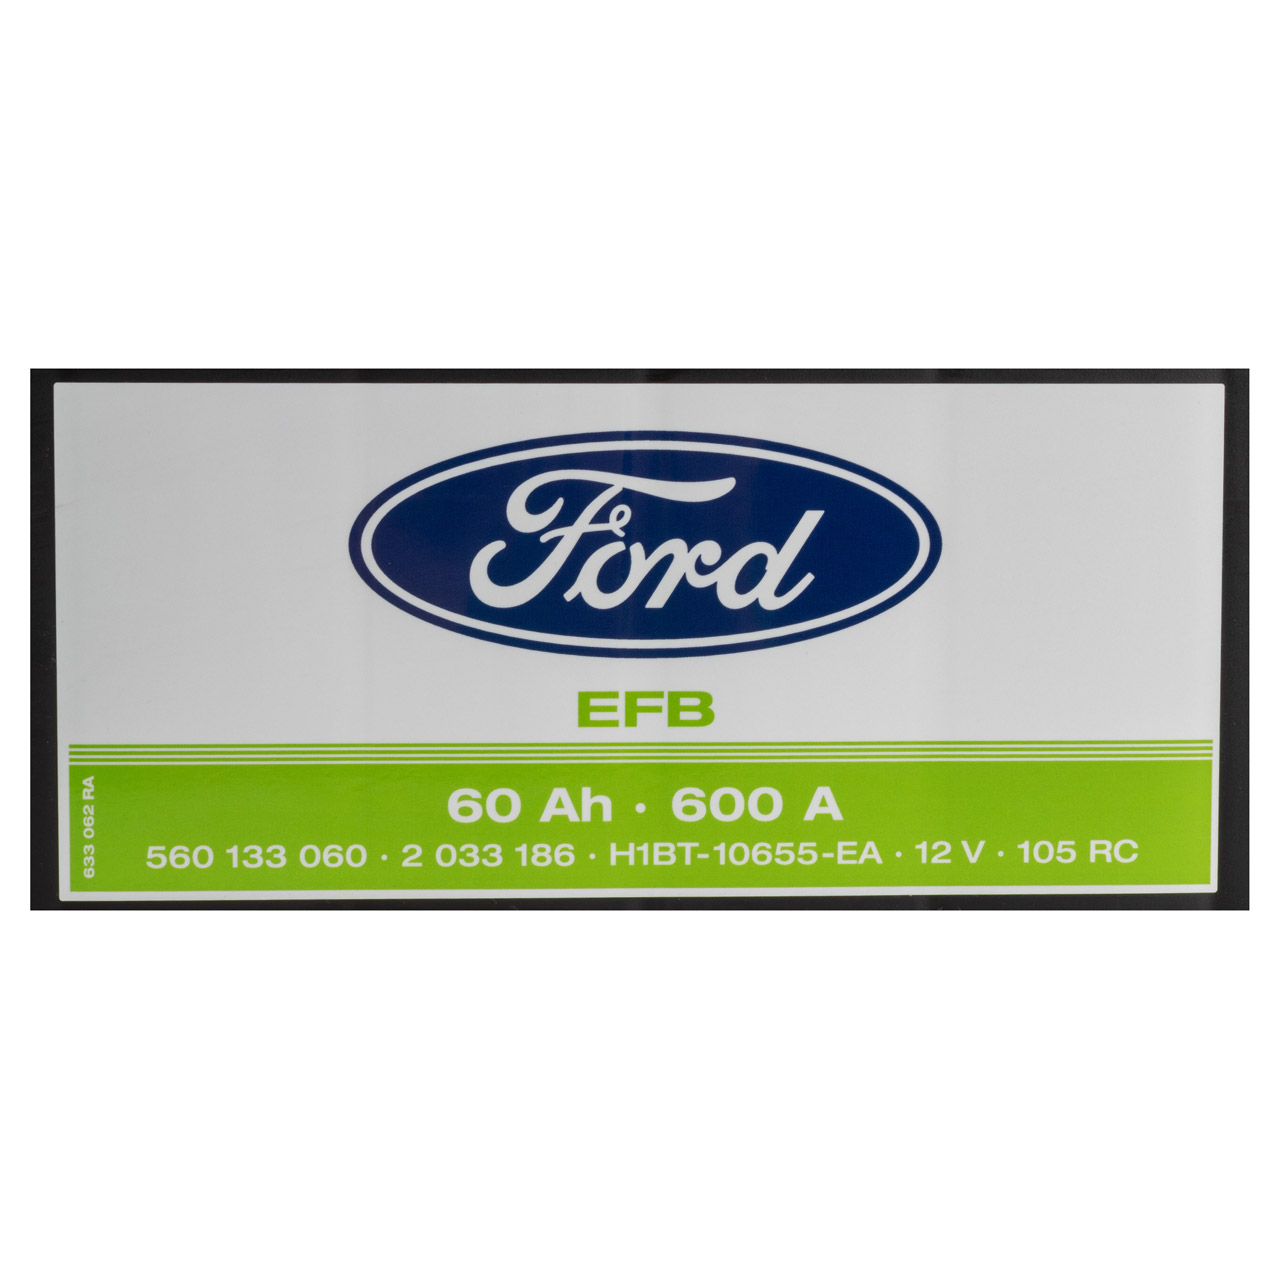 ORIGINAL Ford EFB Autobatterie Batterie Starterbatterie 12V 60Ah 600A 2033186